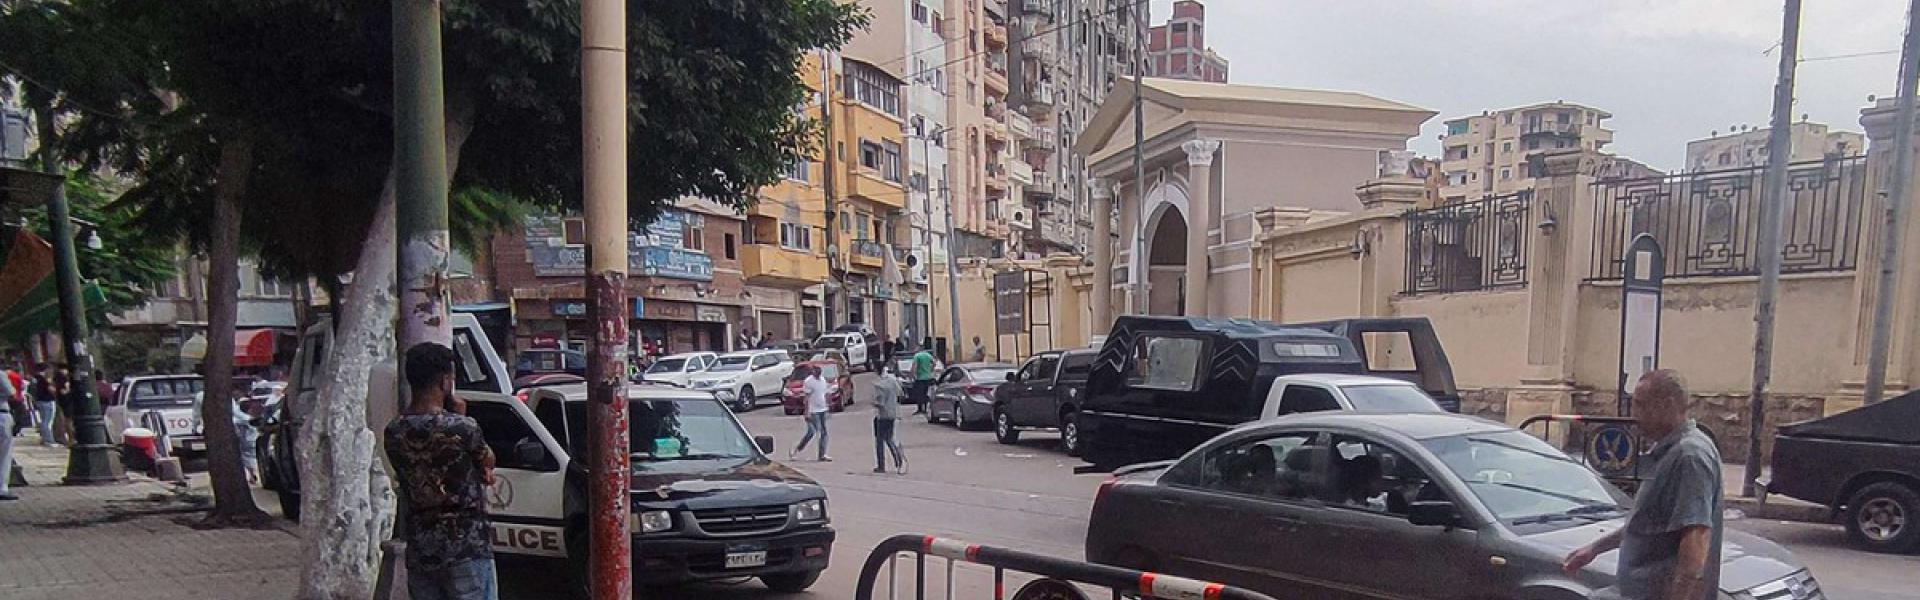 مصر شهدت هجمات ضد سياح اسرائيليين